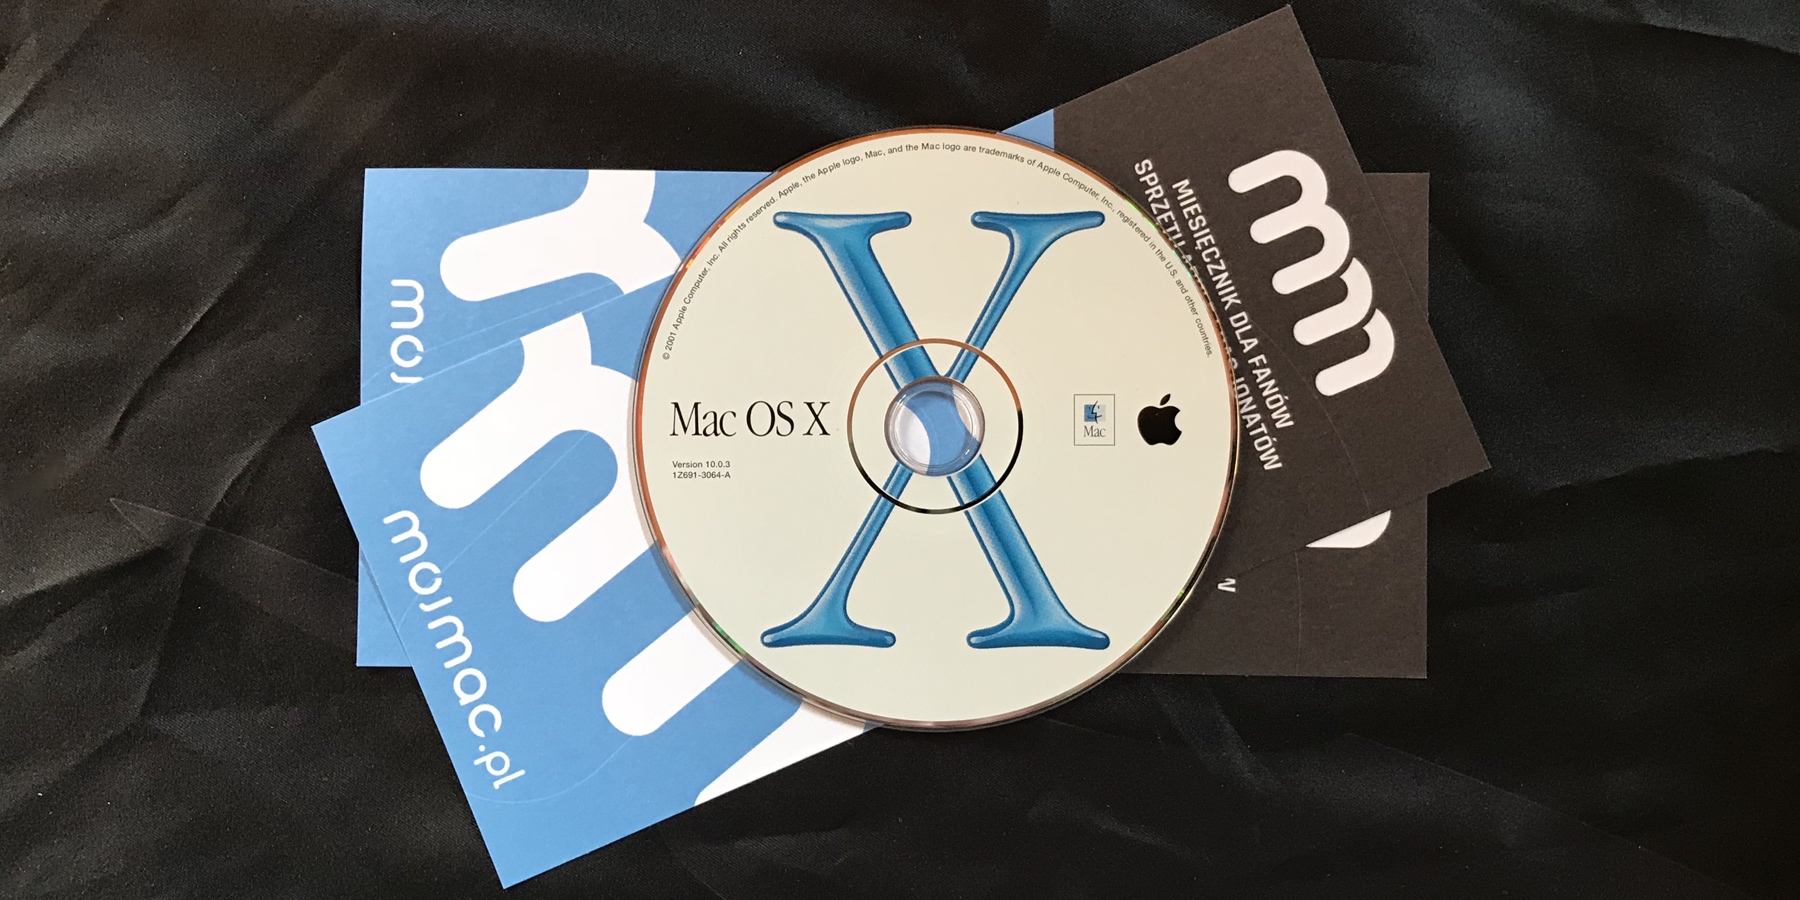 Mac OS X skończył 17 lat, czyli mój debiut w CHIP-ie